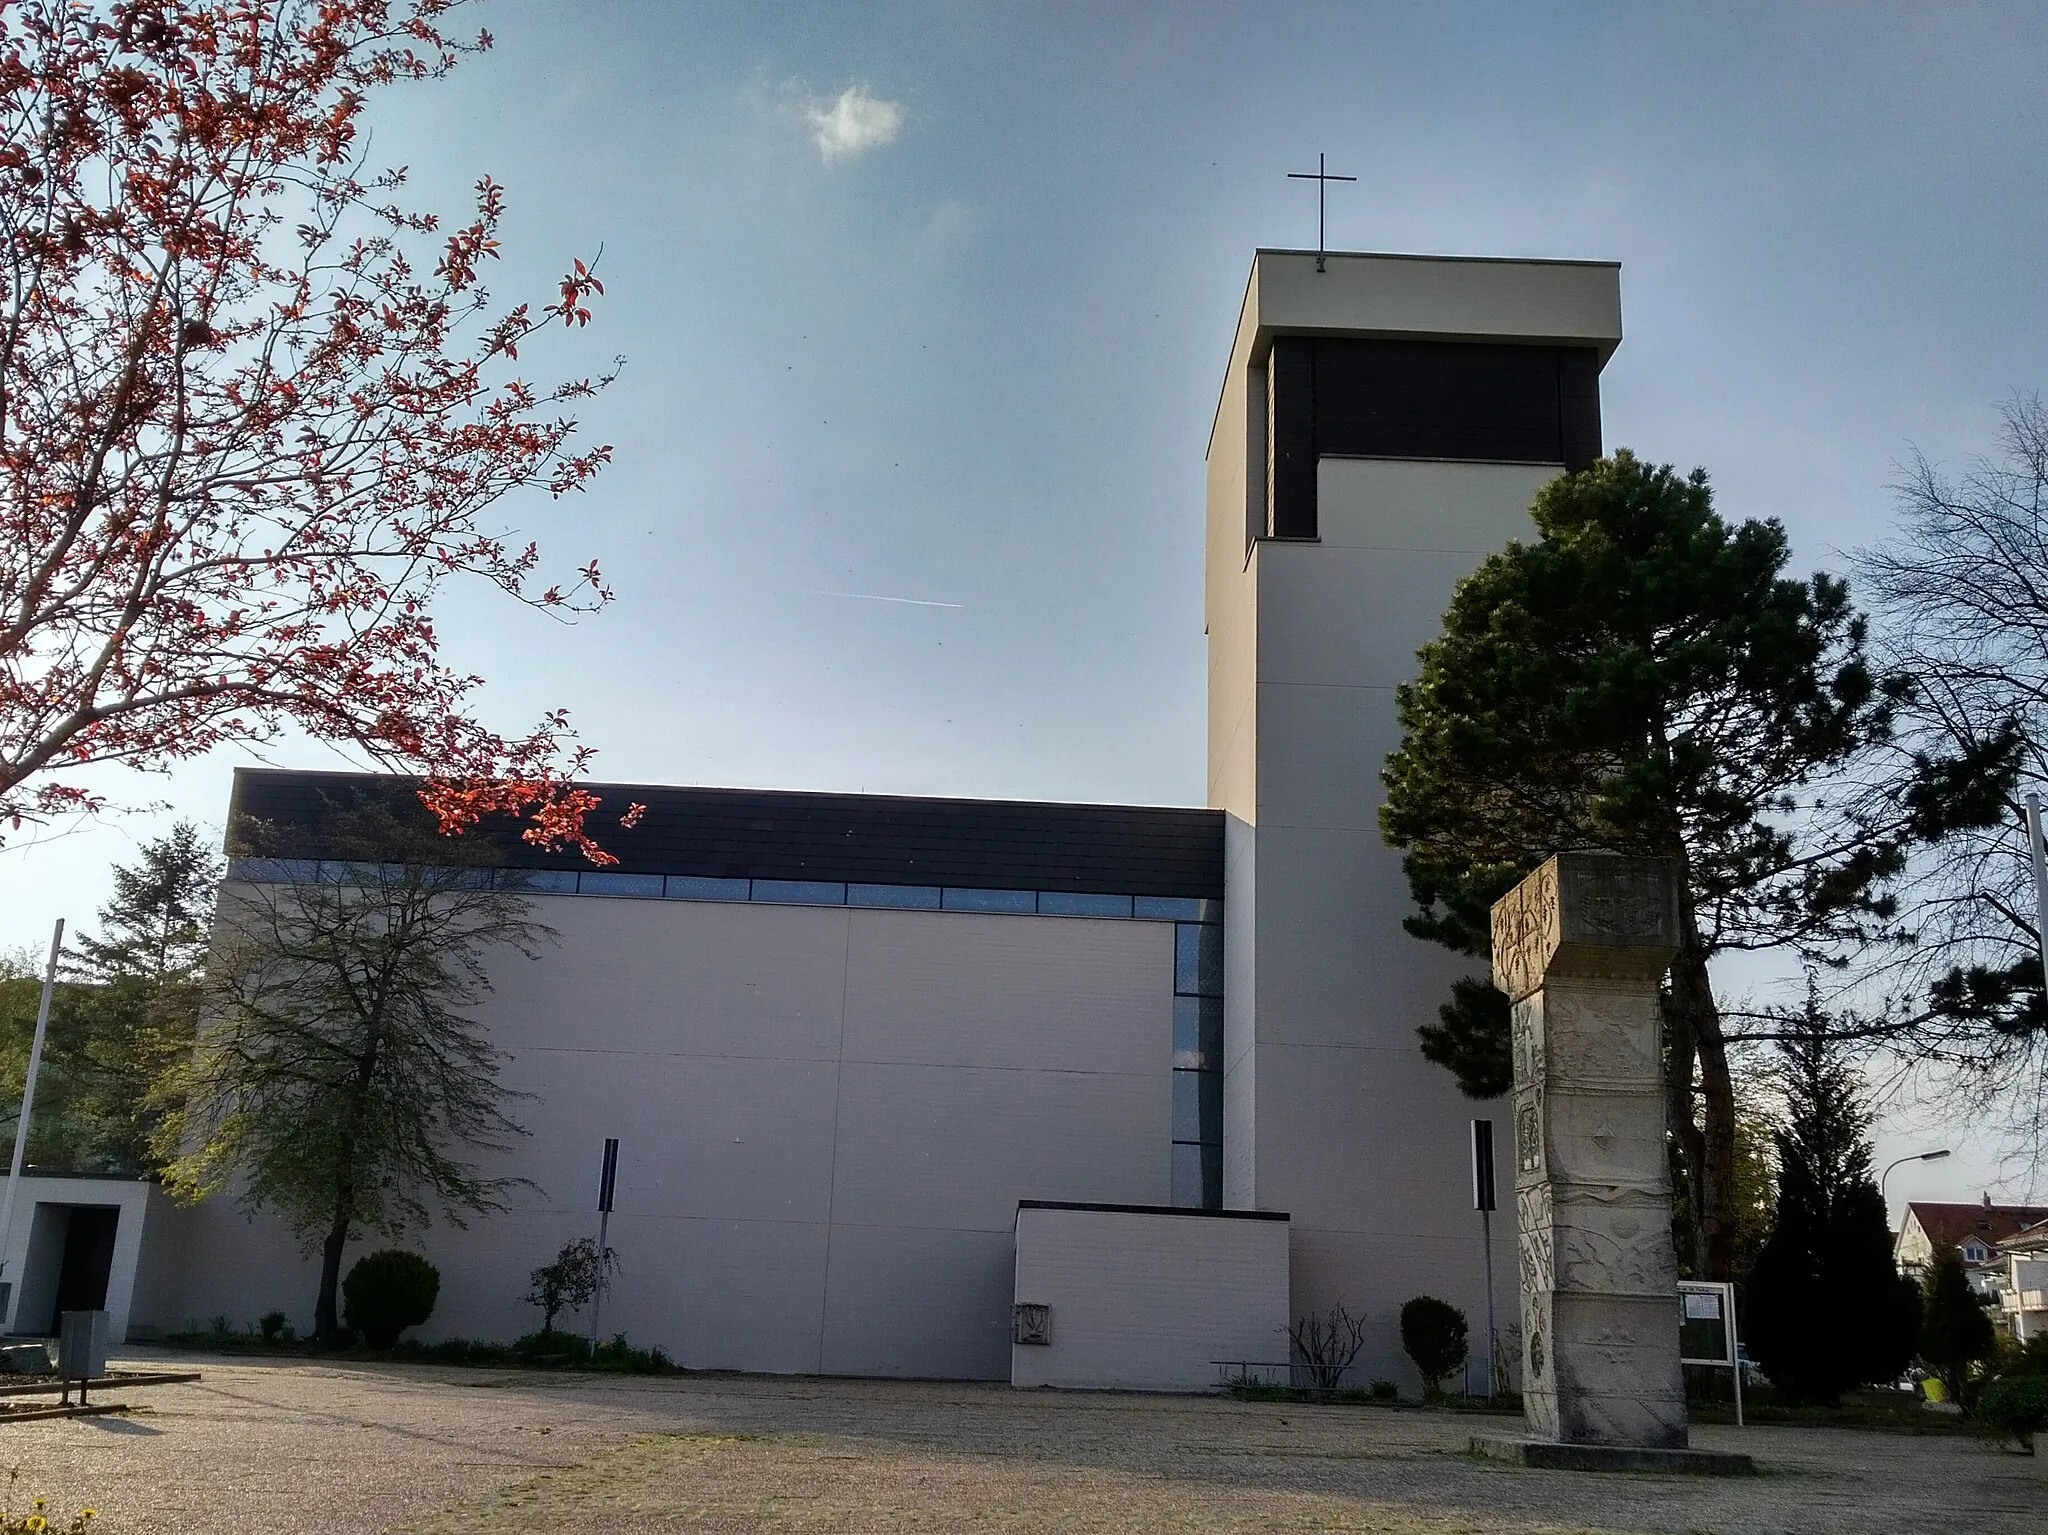 Photo showing: Katholische Kirche St. Gallus in Konstanz im Jahr 2019. Die Kirche wurde 1971 errichtet. Auf dem Vorplatz steht eine Kreuzstele mit Darstellungen von biblischem Geschehen und religiösen Deutungen. Adresse: Berchenstraße 46.